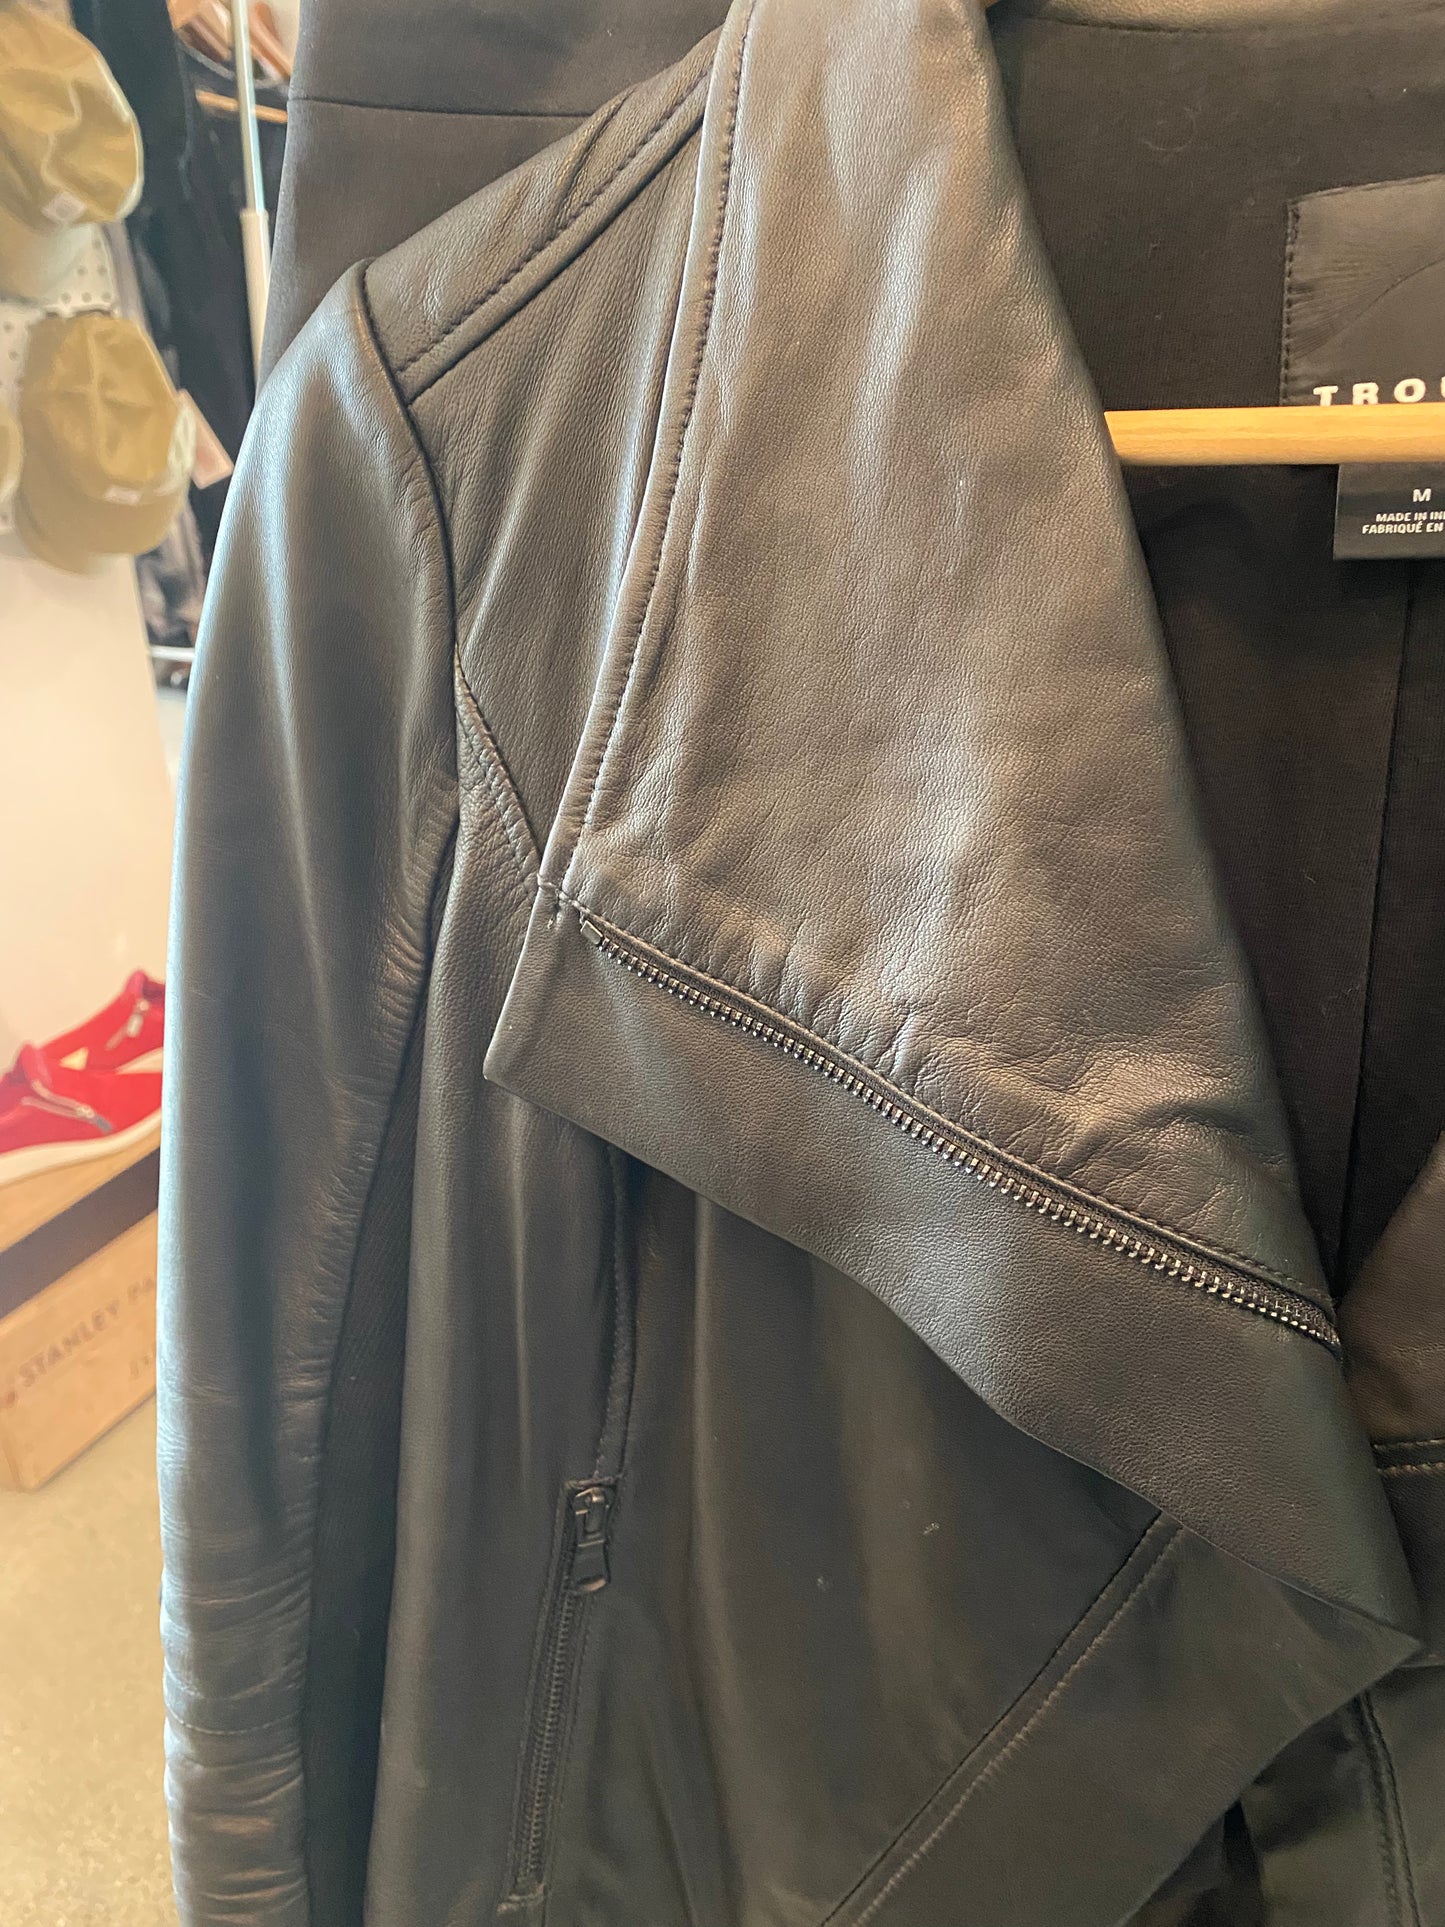 Consignment 4903-26 Trouve black leather jacket sz M